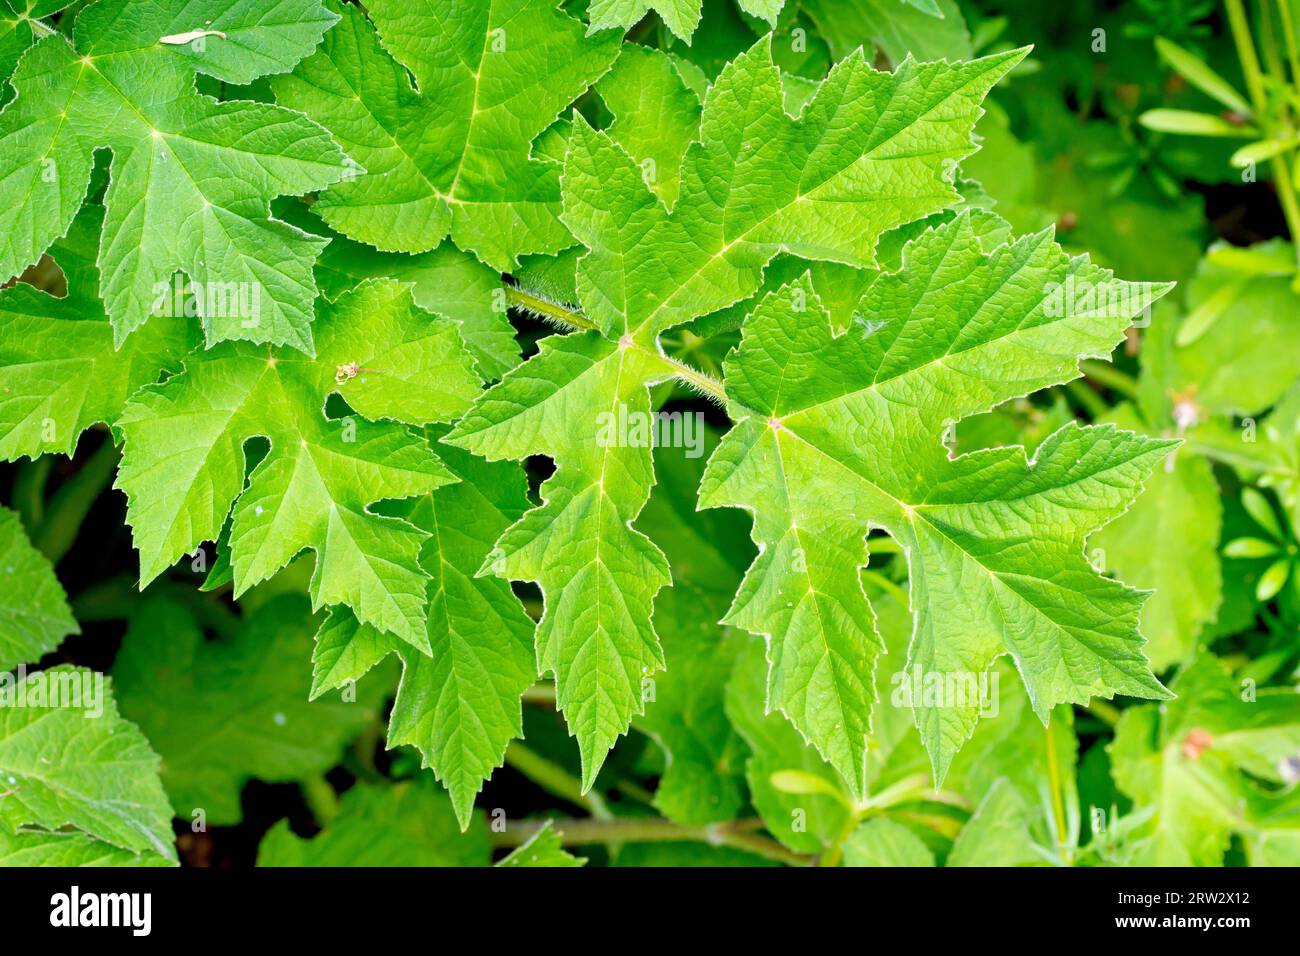 Alghe o mucca Parsnip (heracleum sphondylium), primo piano che mostra le grandi foglie verdi inferiori della pianta comune di boschi e pascoli. Foto Stock